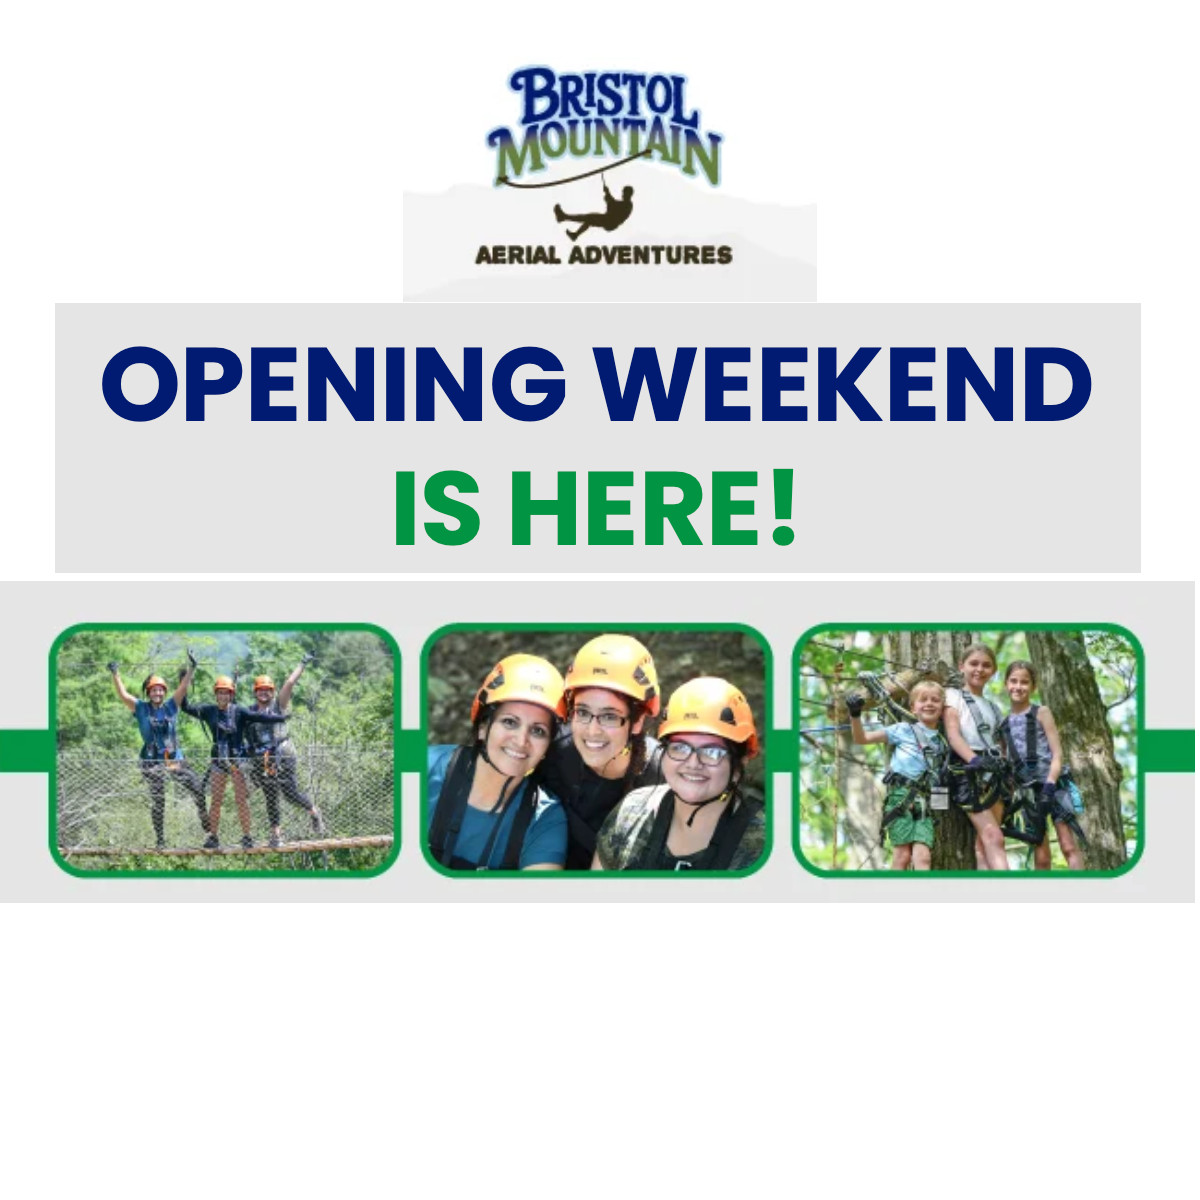 Bristol Mountain Aerial Adventures opening weekend is here